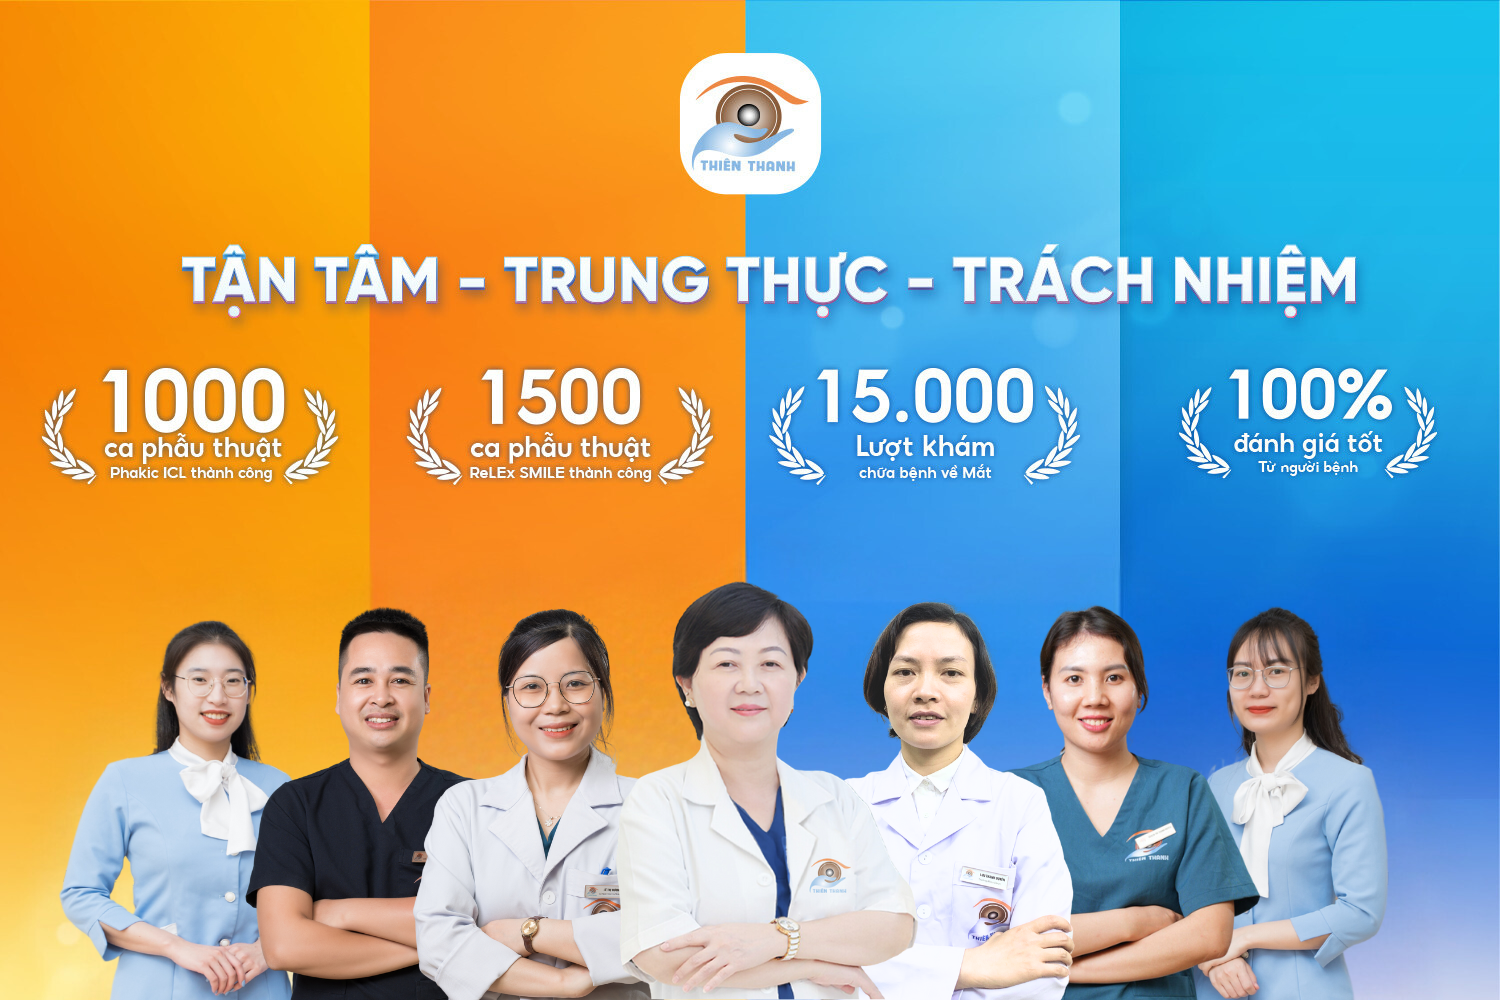 Bệnh viện Mắt Thiên Thanh: Kiến tạo giá trị – Tiếp nối Thành công